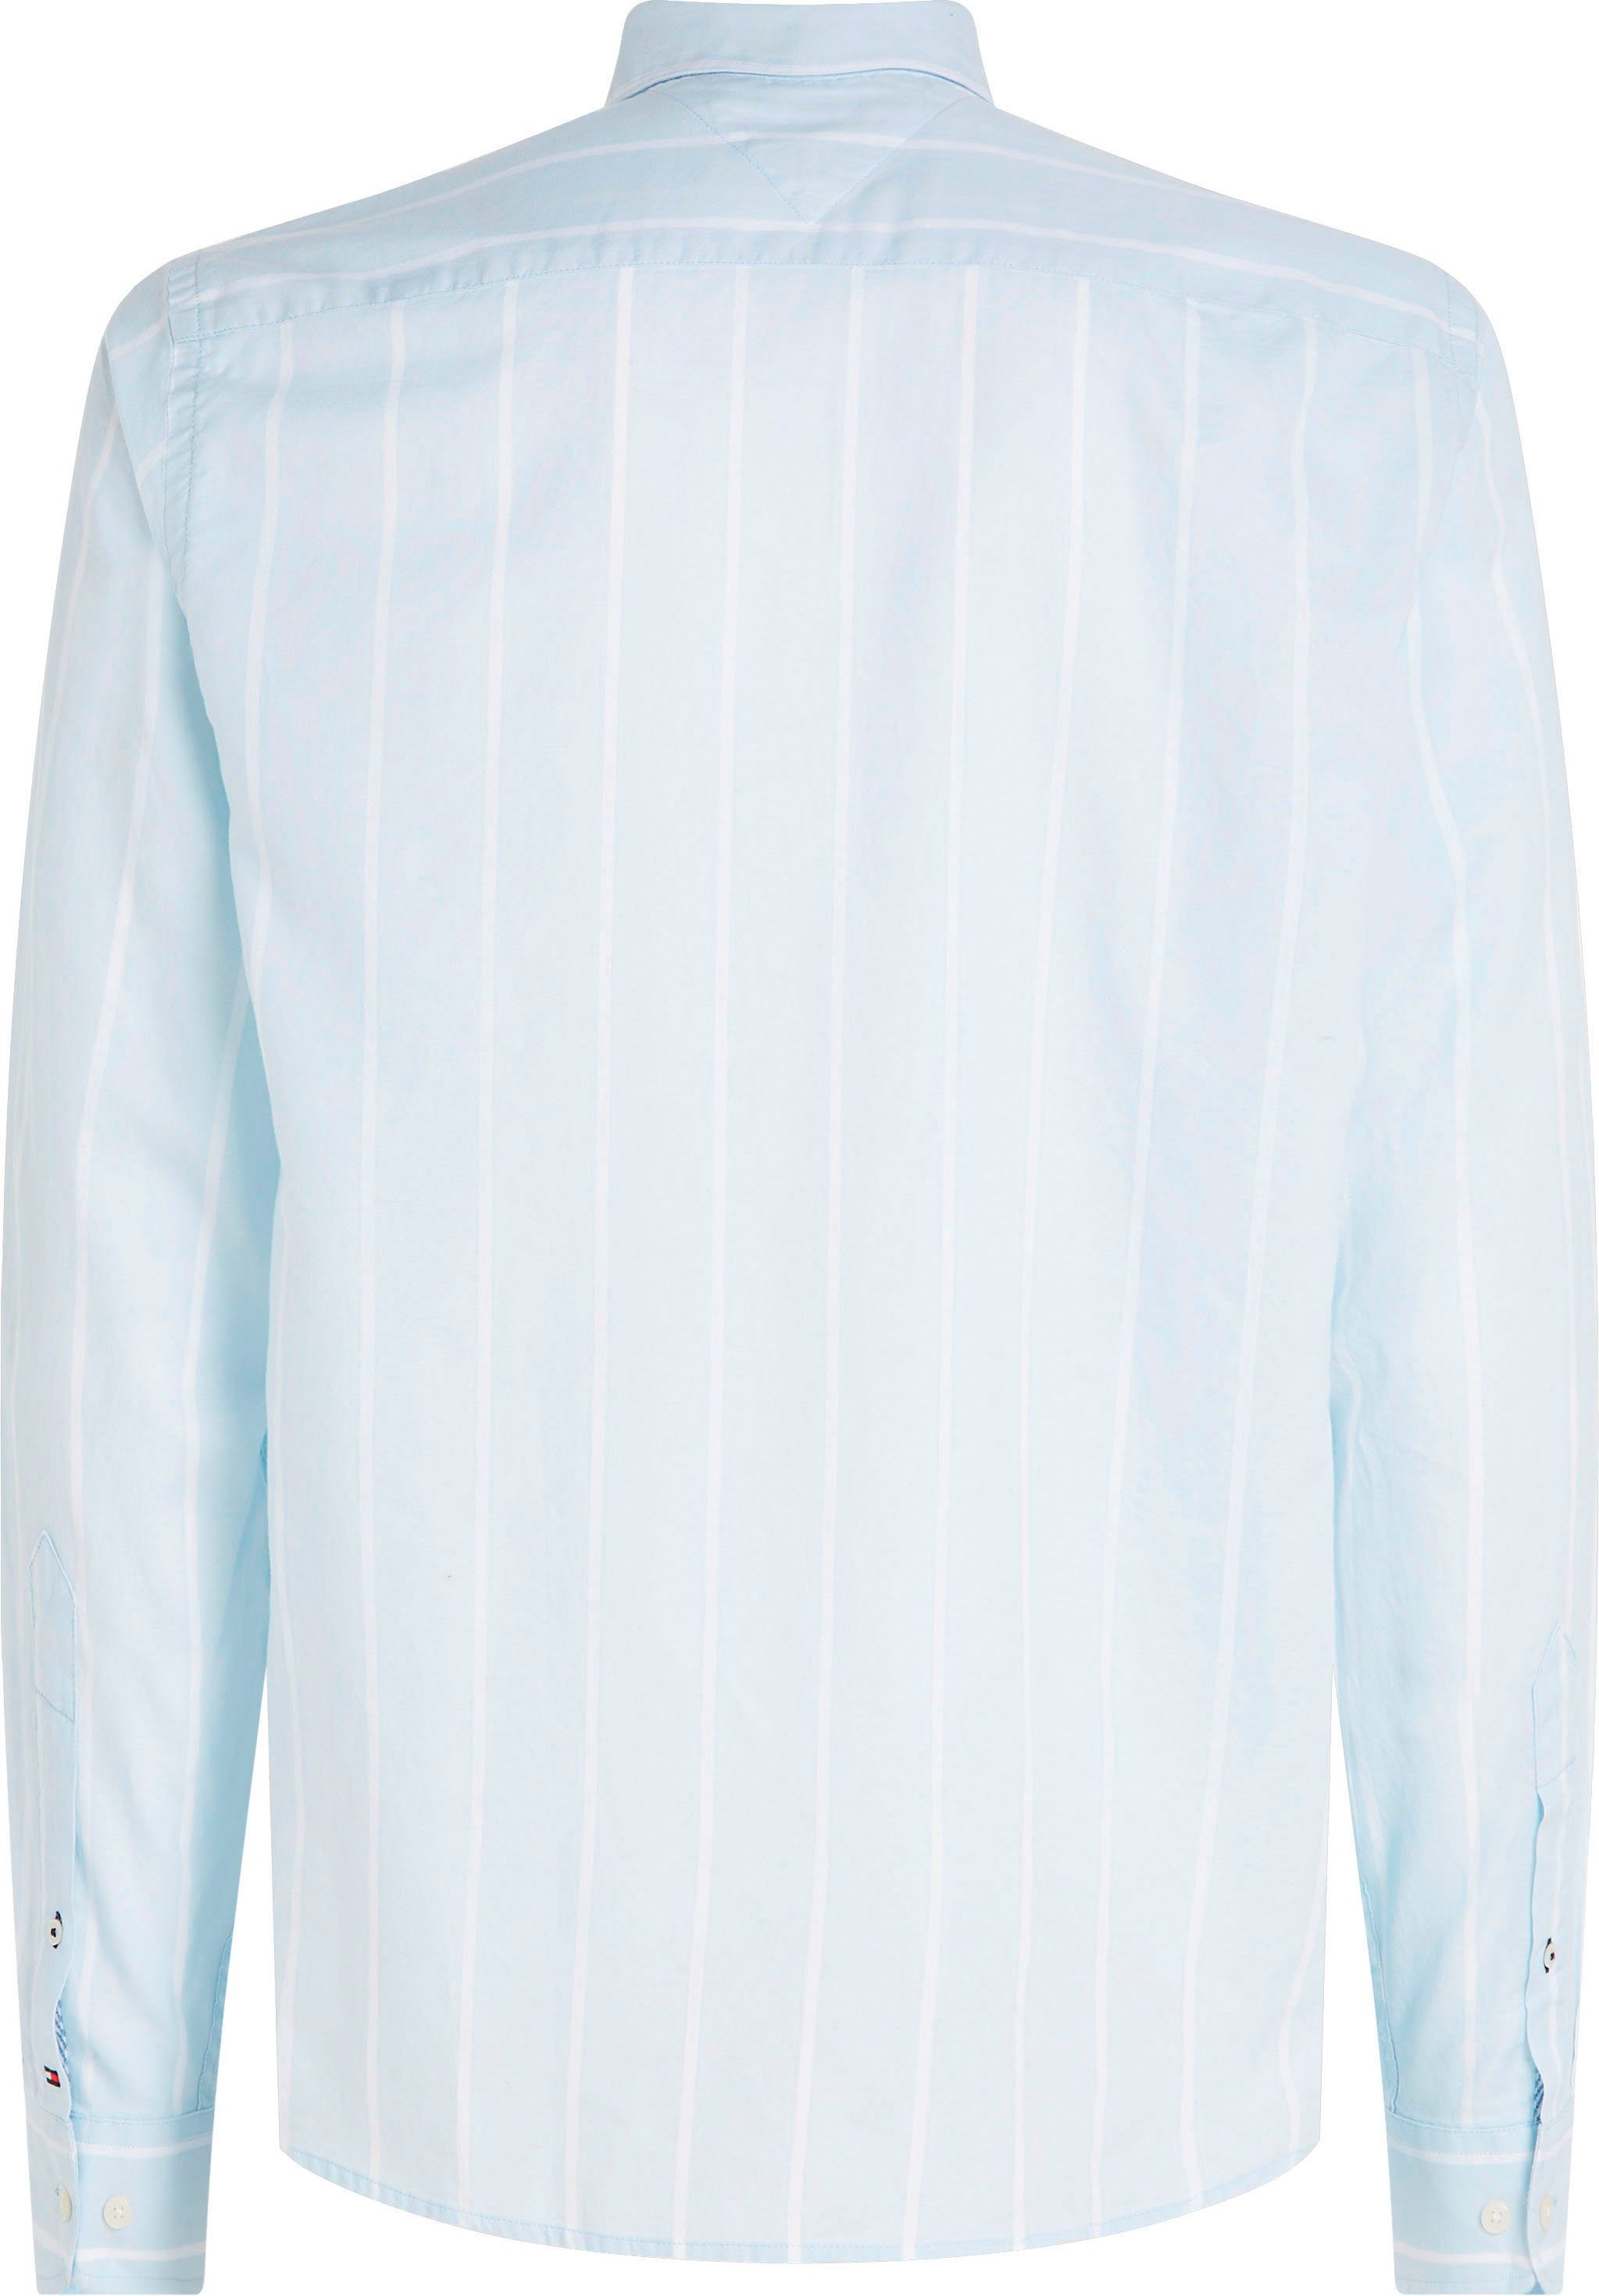 OXFORD SHIRT White mit Langarmhemd RF Blue/Optic Breezy STRIPE Button-down-Kragen Tommy Hilfiger